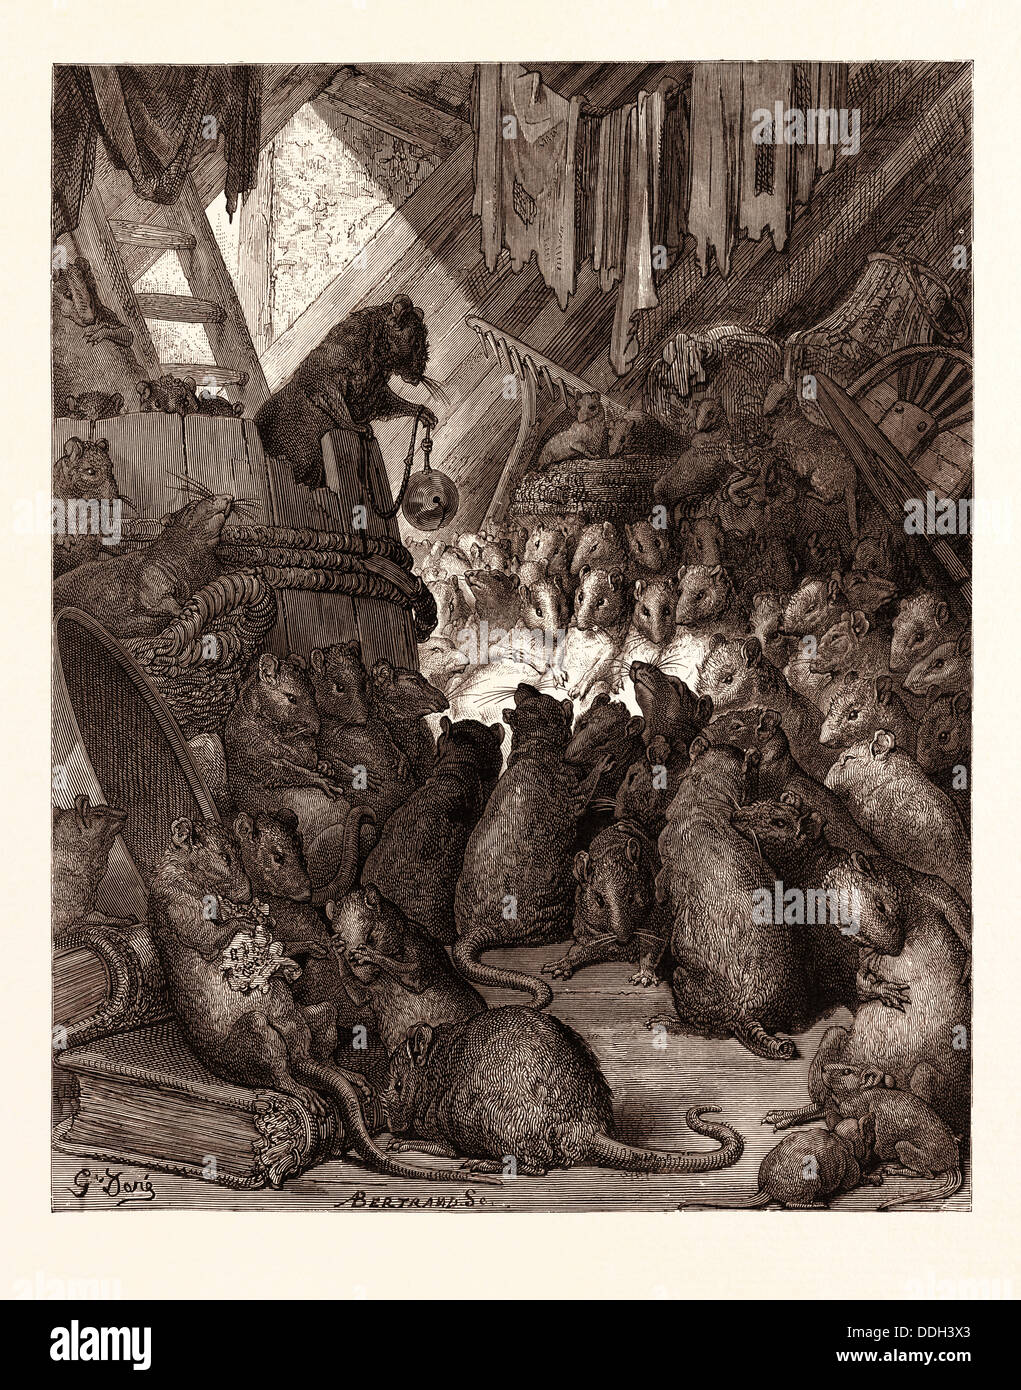 DER RAT HELD VON DEN RATTEN VON GUSTAVE DORÉ. Dore, 1832-1883, Französisch.  Gravur für Fabeln von Jean De La Fontaine, graviert Stockfotografie - Alamy